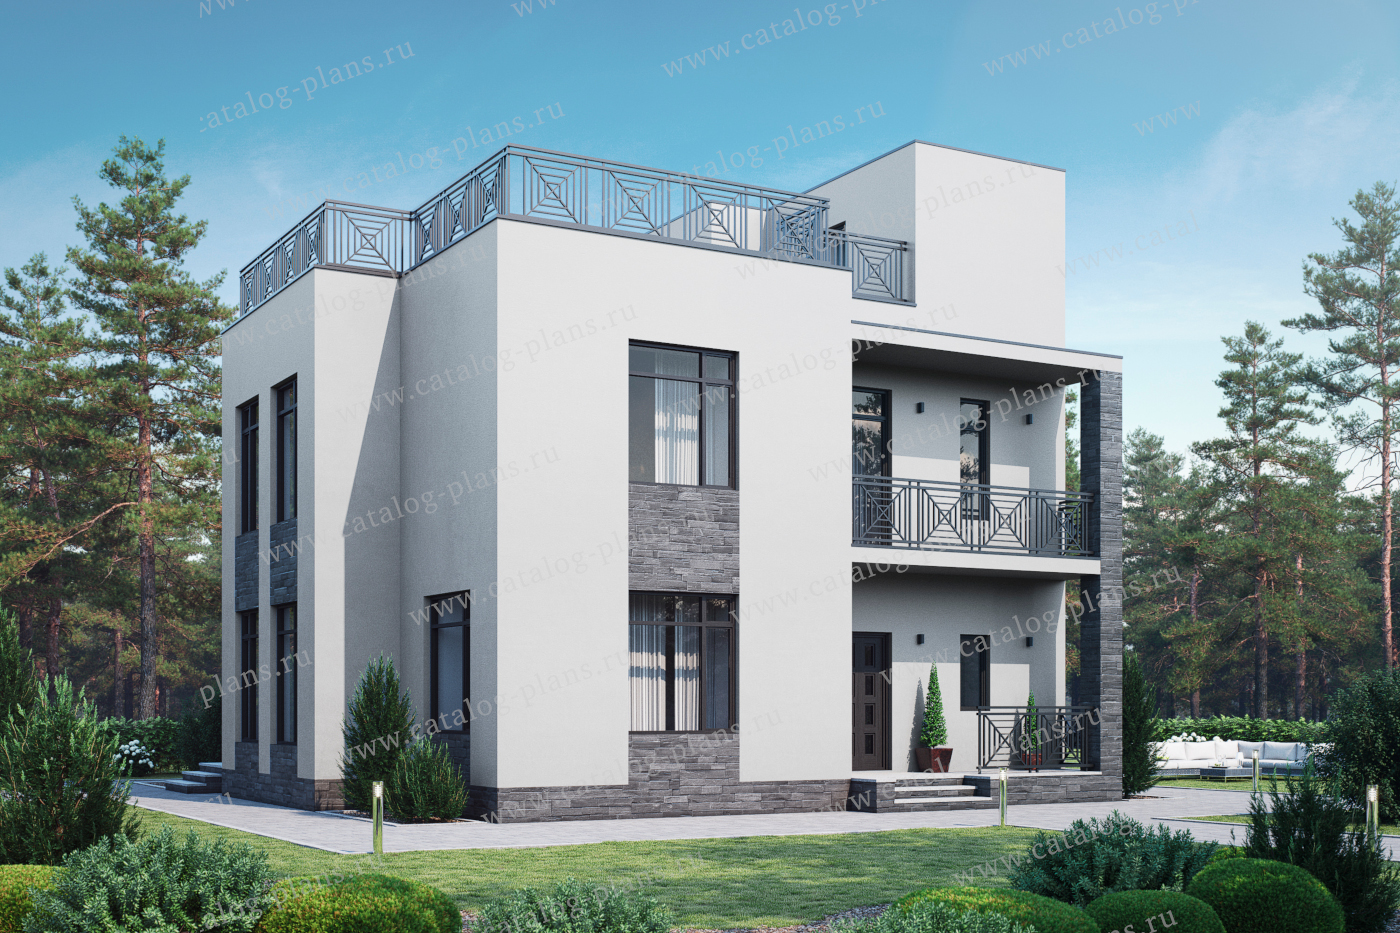 Проект 57-00X, жилой дом, материал - газобетонные блоки 400, количество этажей - 4, архитектурный стиль - хай-тек, фундамент - монолитная ж/б плита